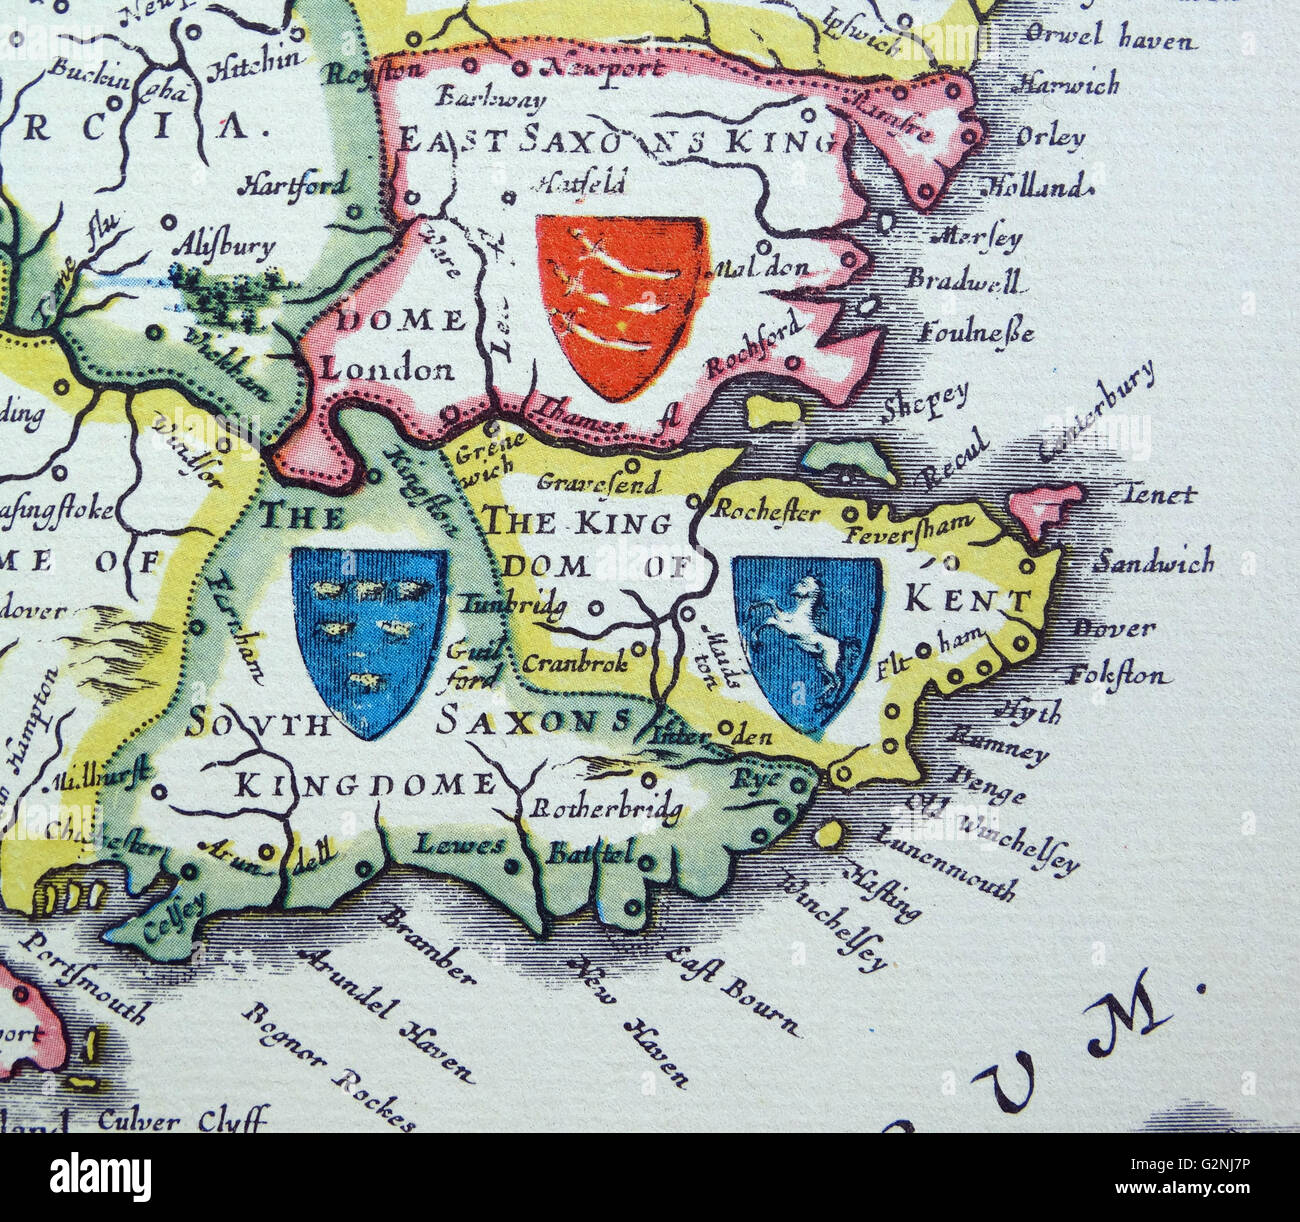 Escudos de Sussex, Kent y Essex desde el Heptarchy; un nombre colectivo aplicado a los reinos anglosajones del sur, este y centro de Inglaterra durante la antigüedad tardía y la Alta Edad Media, Detalle de un mapa antiguo de Gran Bretaña, por el cartógrafo holandés Willem Blaeu Atlas Novus (Amsterdam, 1635) Foto de stock